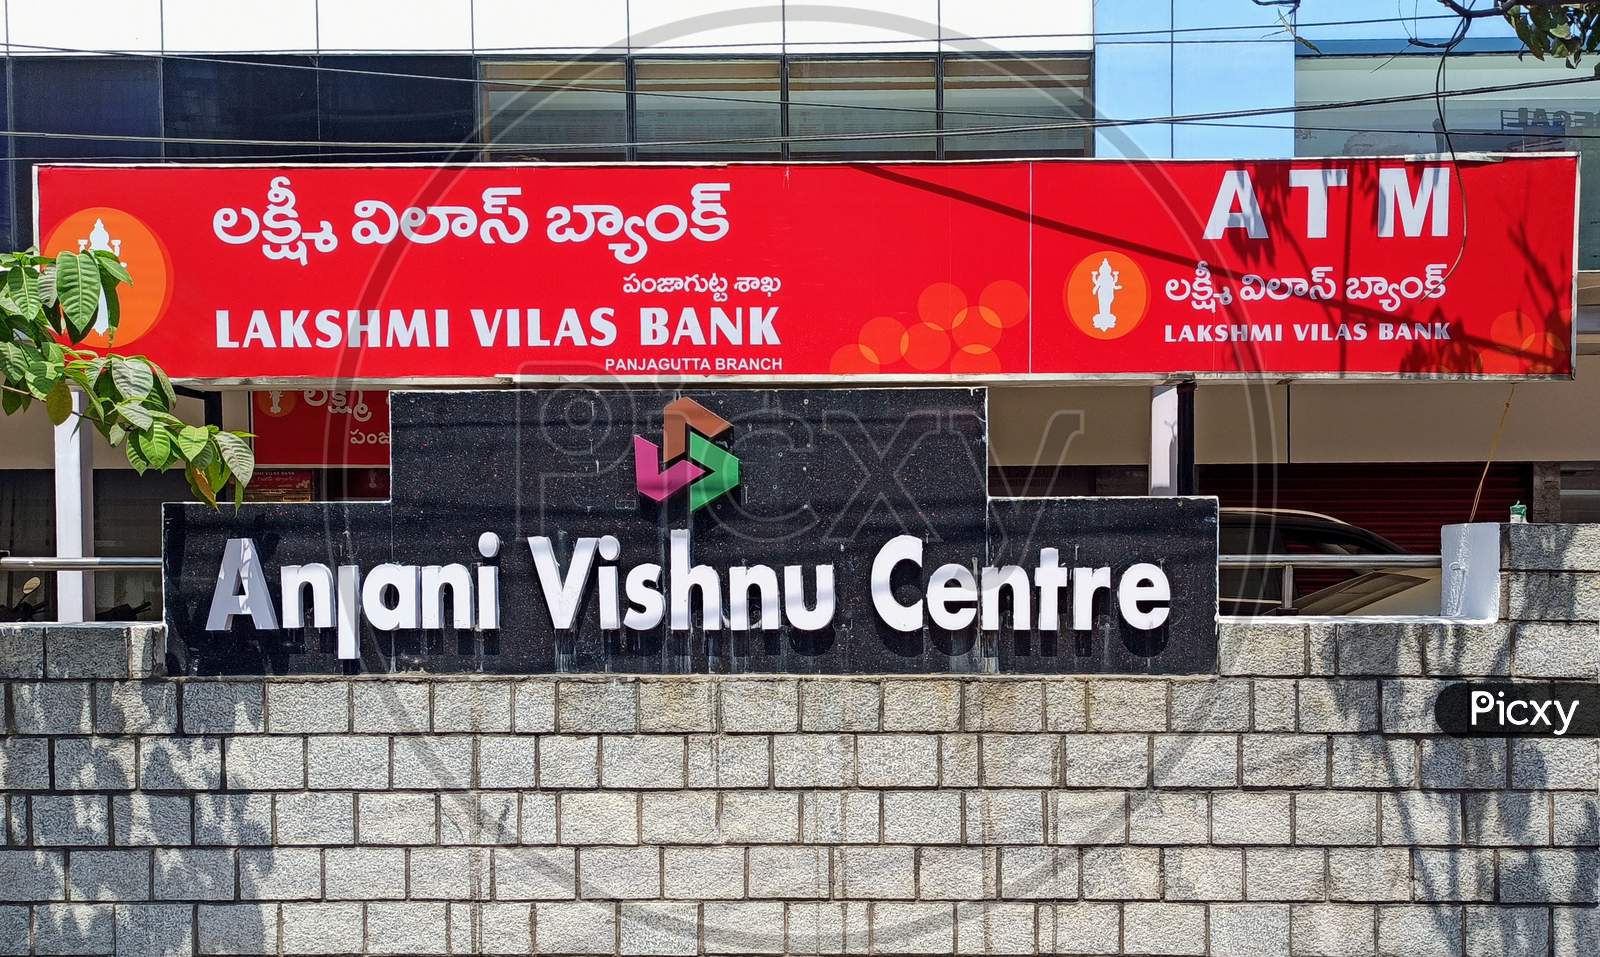 Lakshmi Vilas Bank ATM at Anjani Vishnu Centre